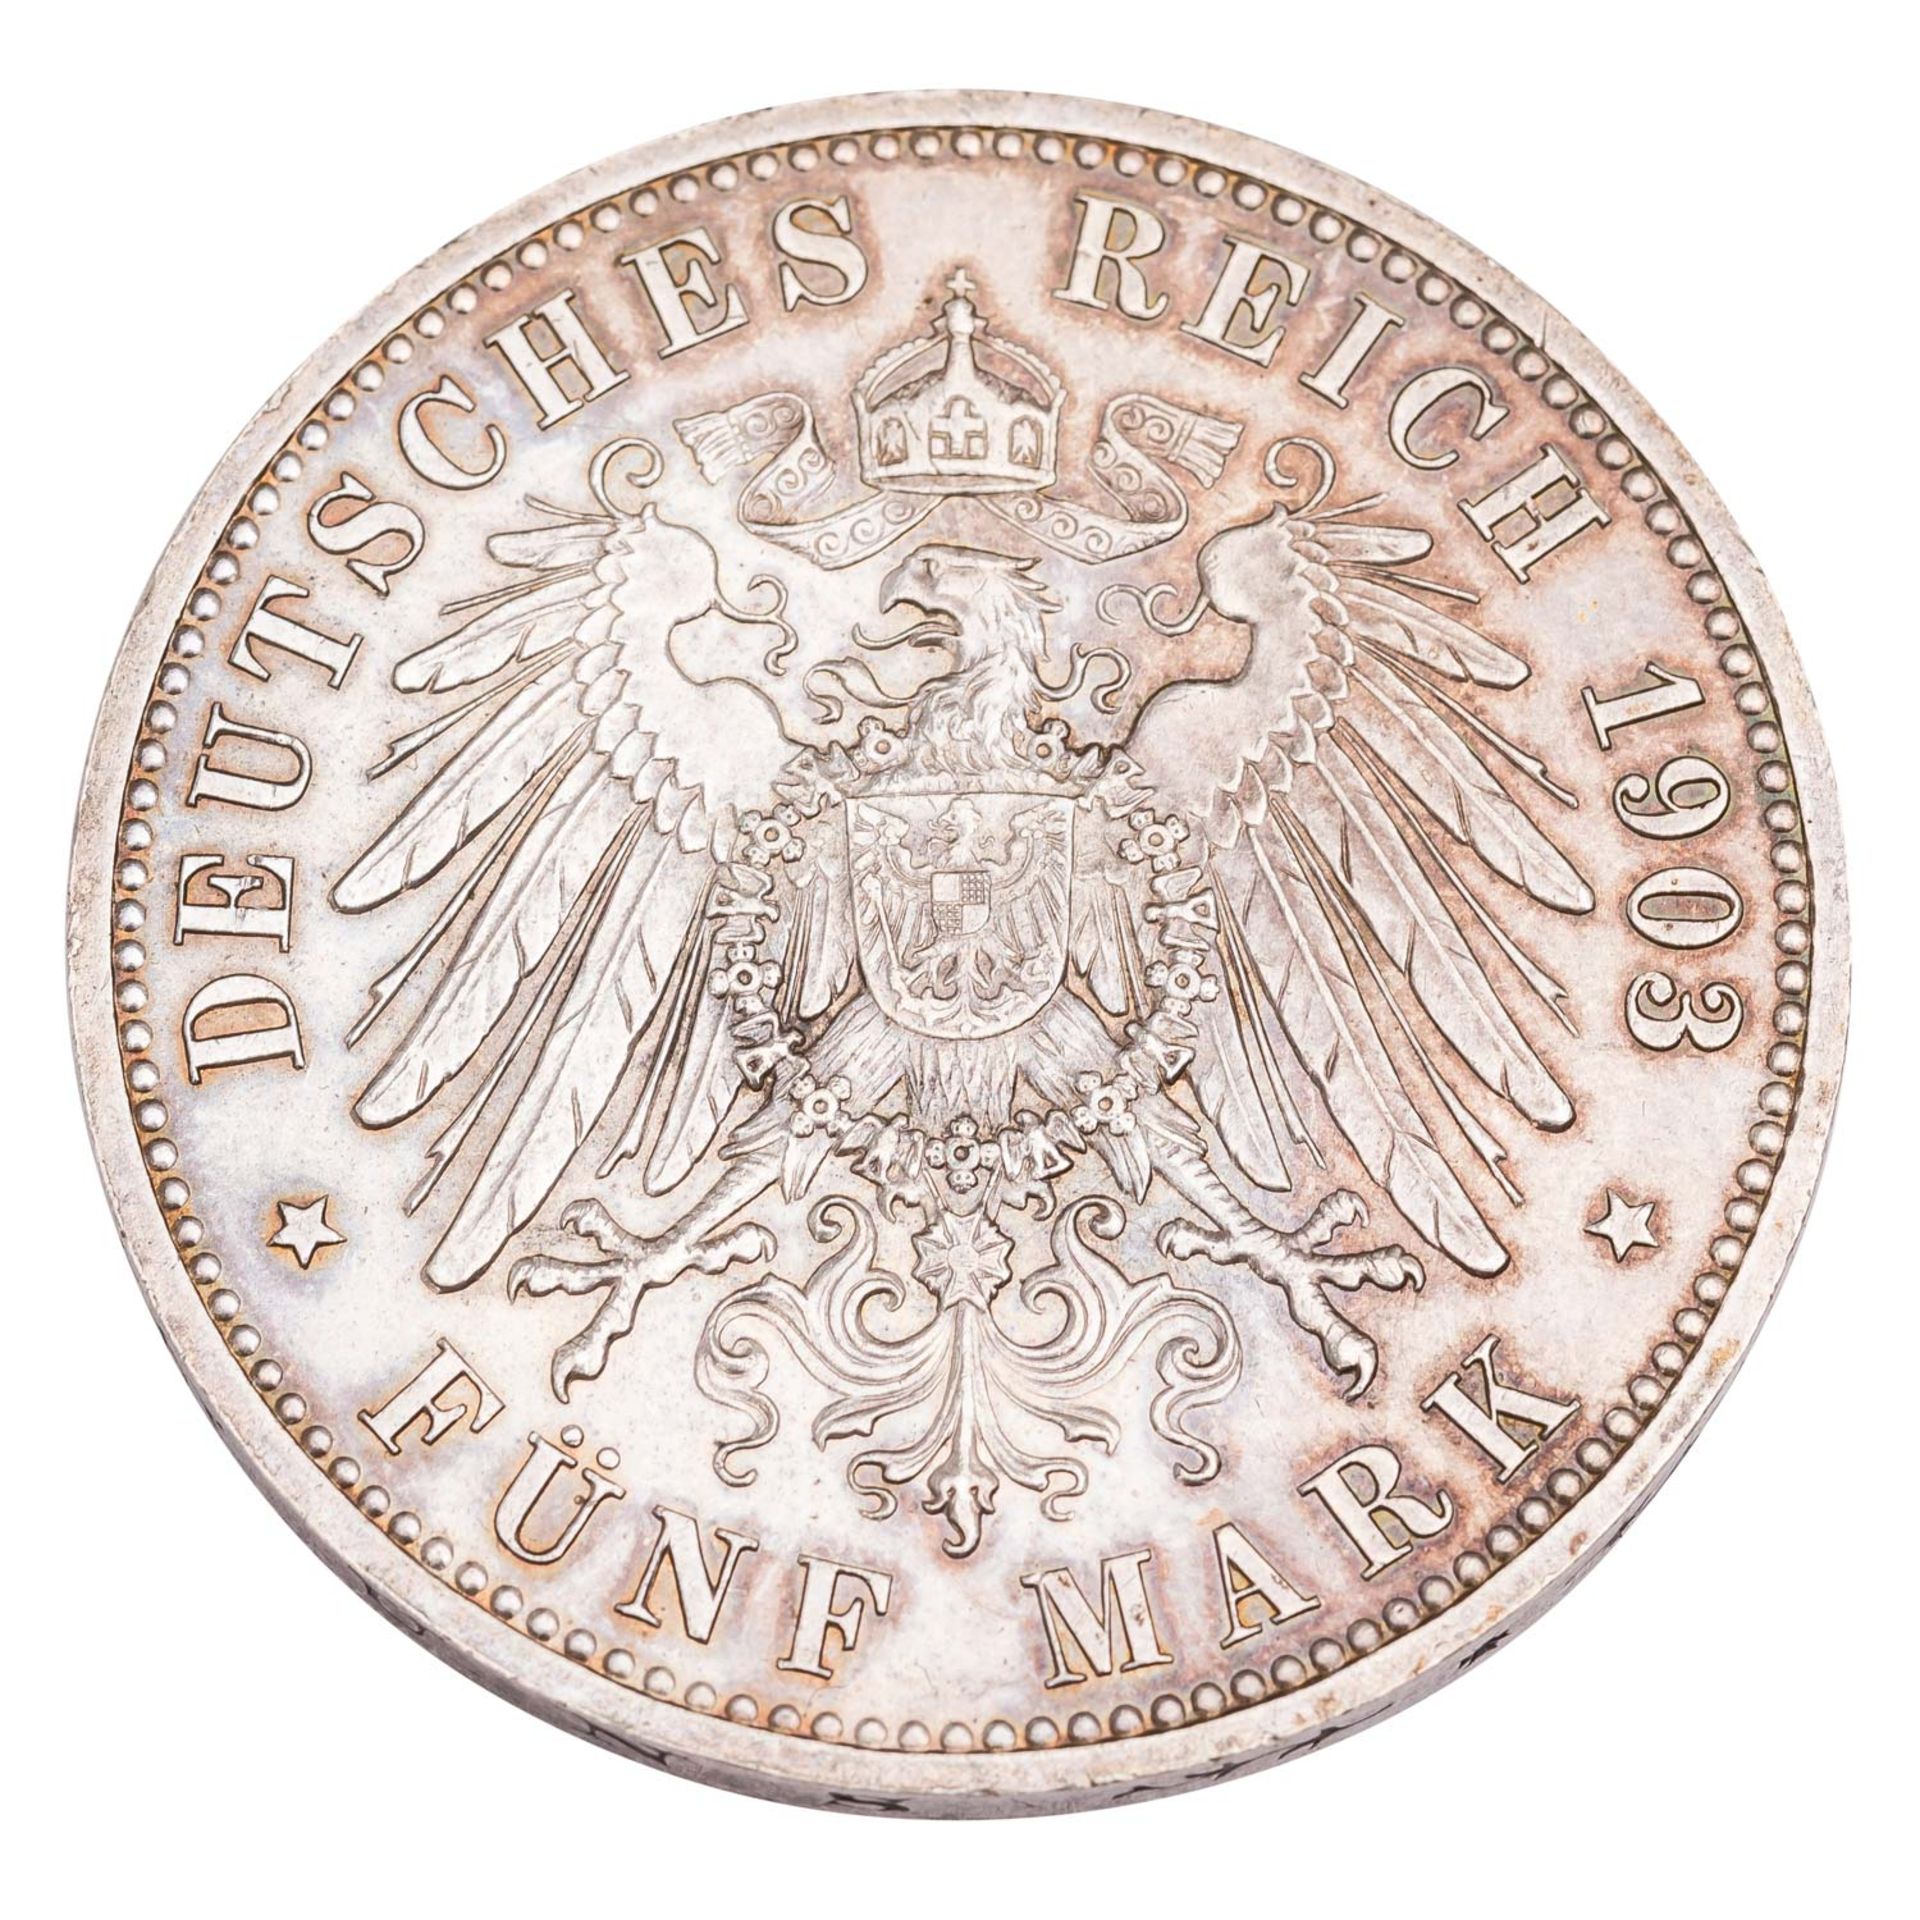 Herzogtum Sachsen-Altenburg - 5 Mark 1903/A, Zum 50-jährigen Regierungsjubiläum,